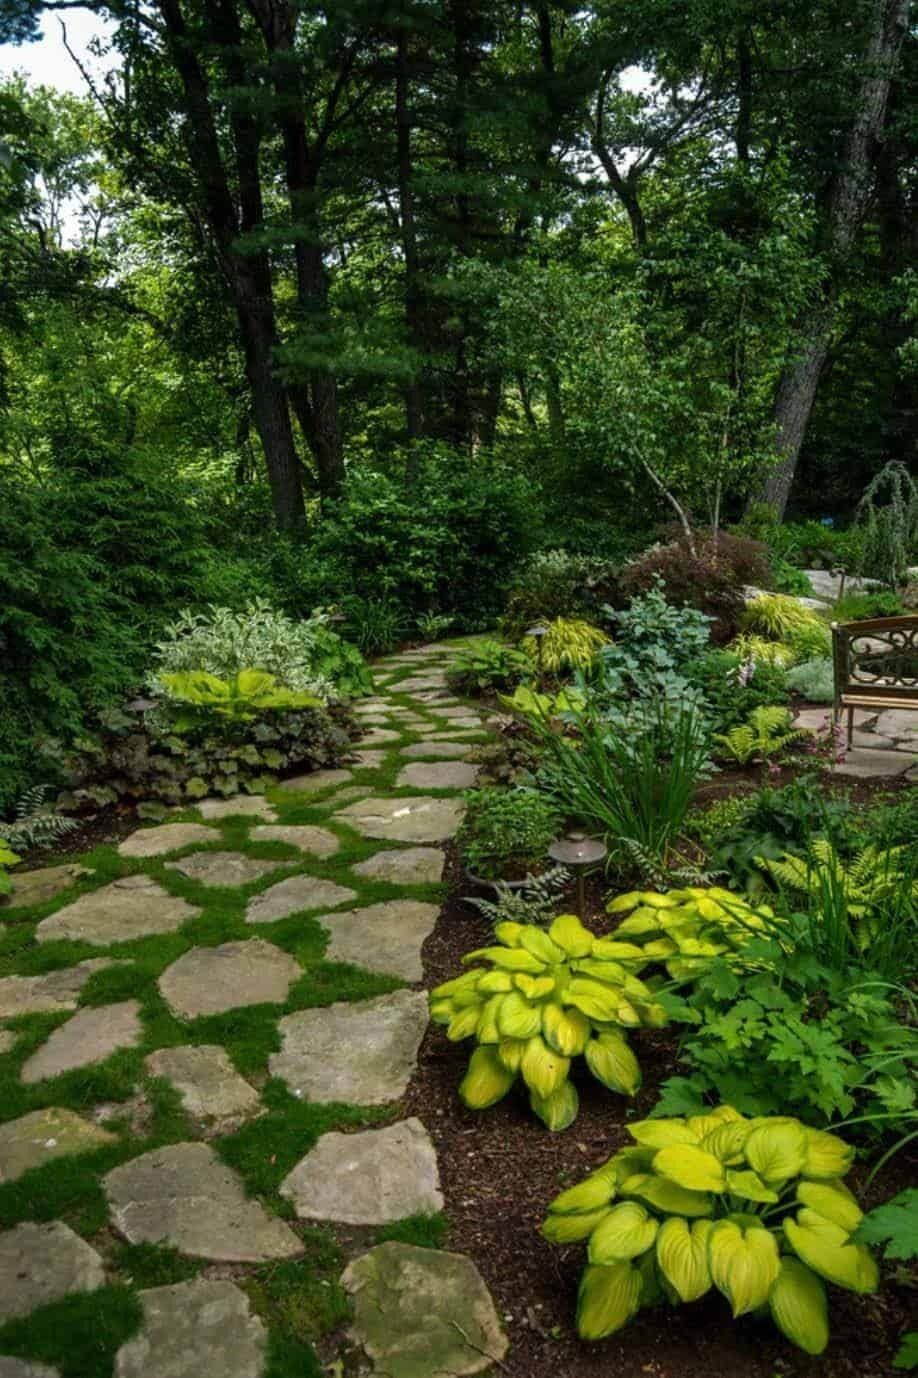 The Art of Incorporating Stones in Garden Design